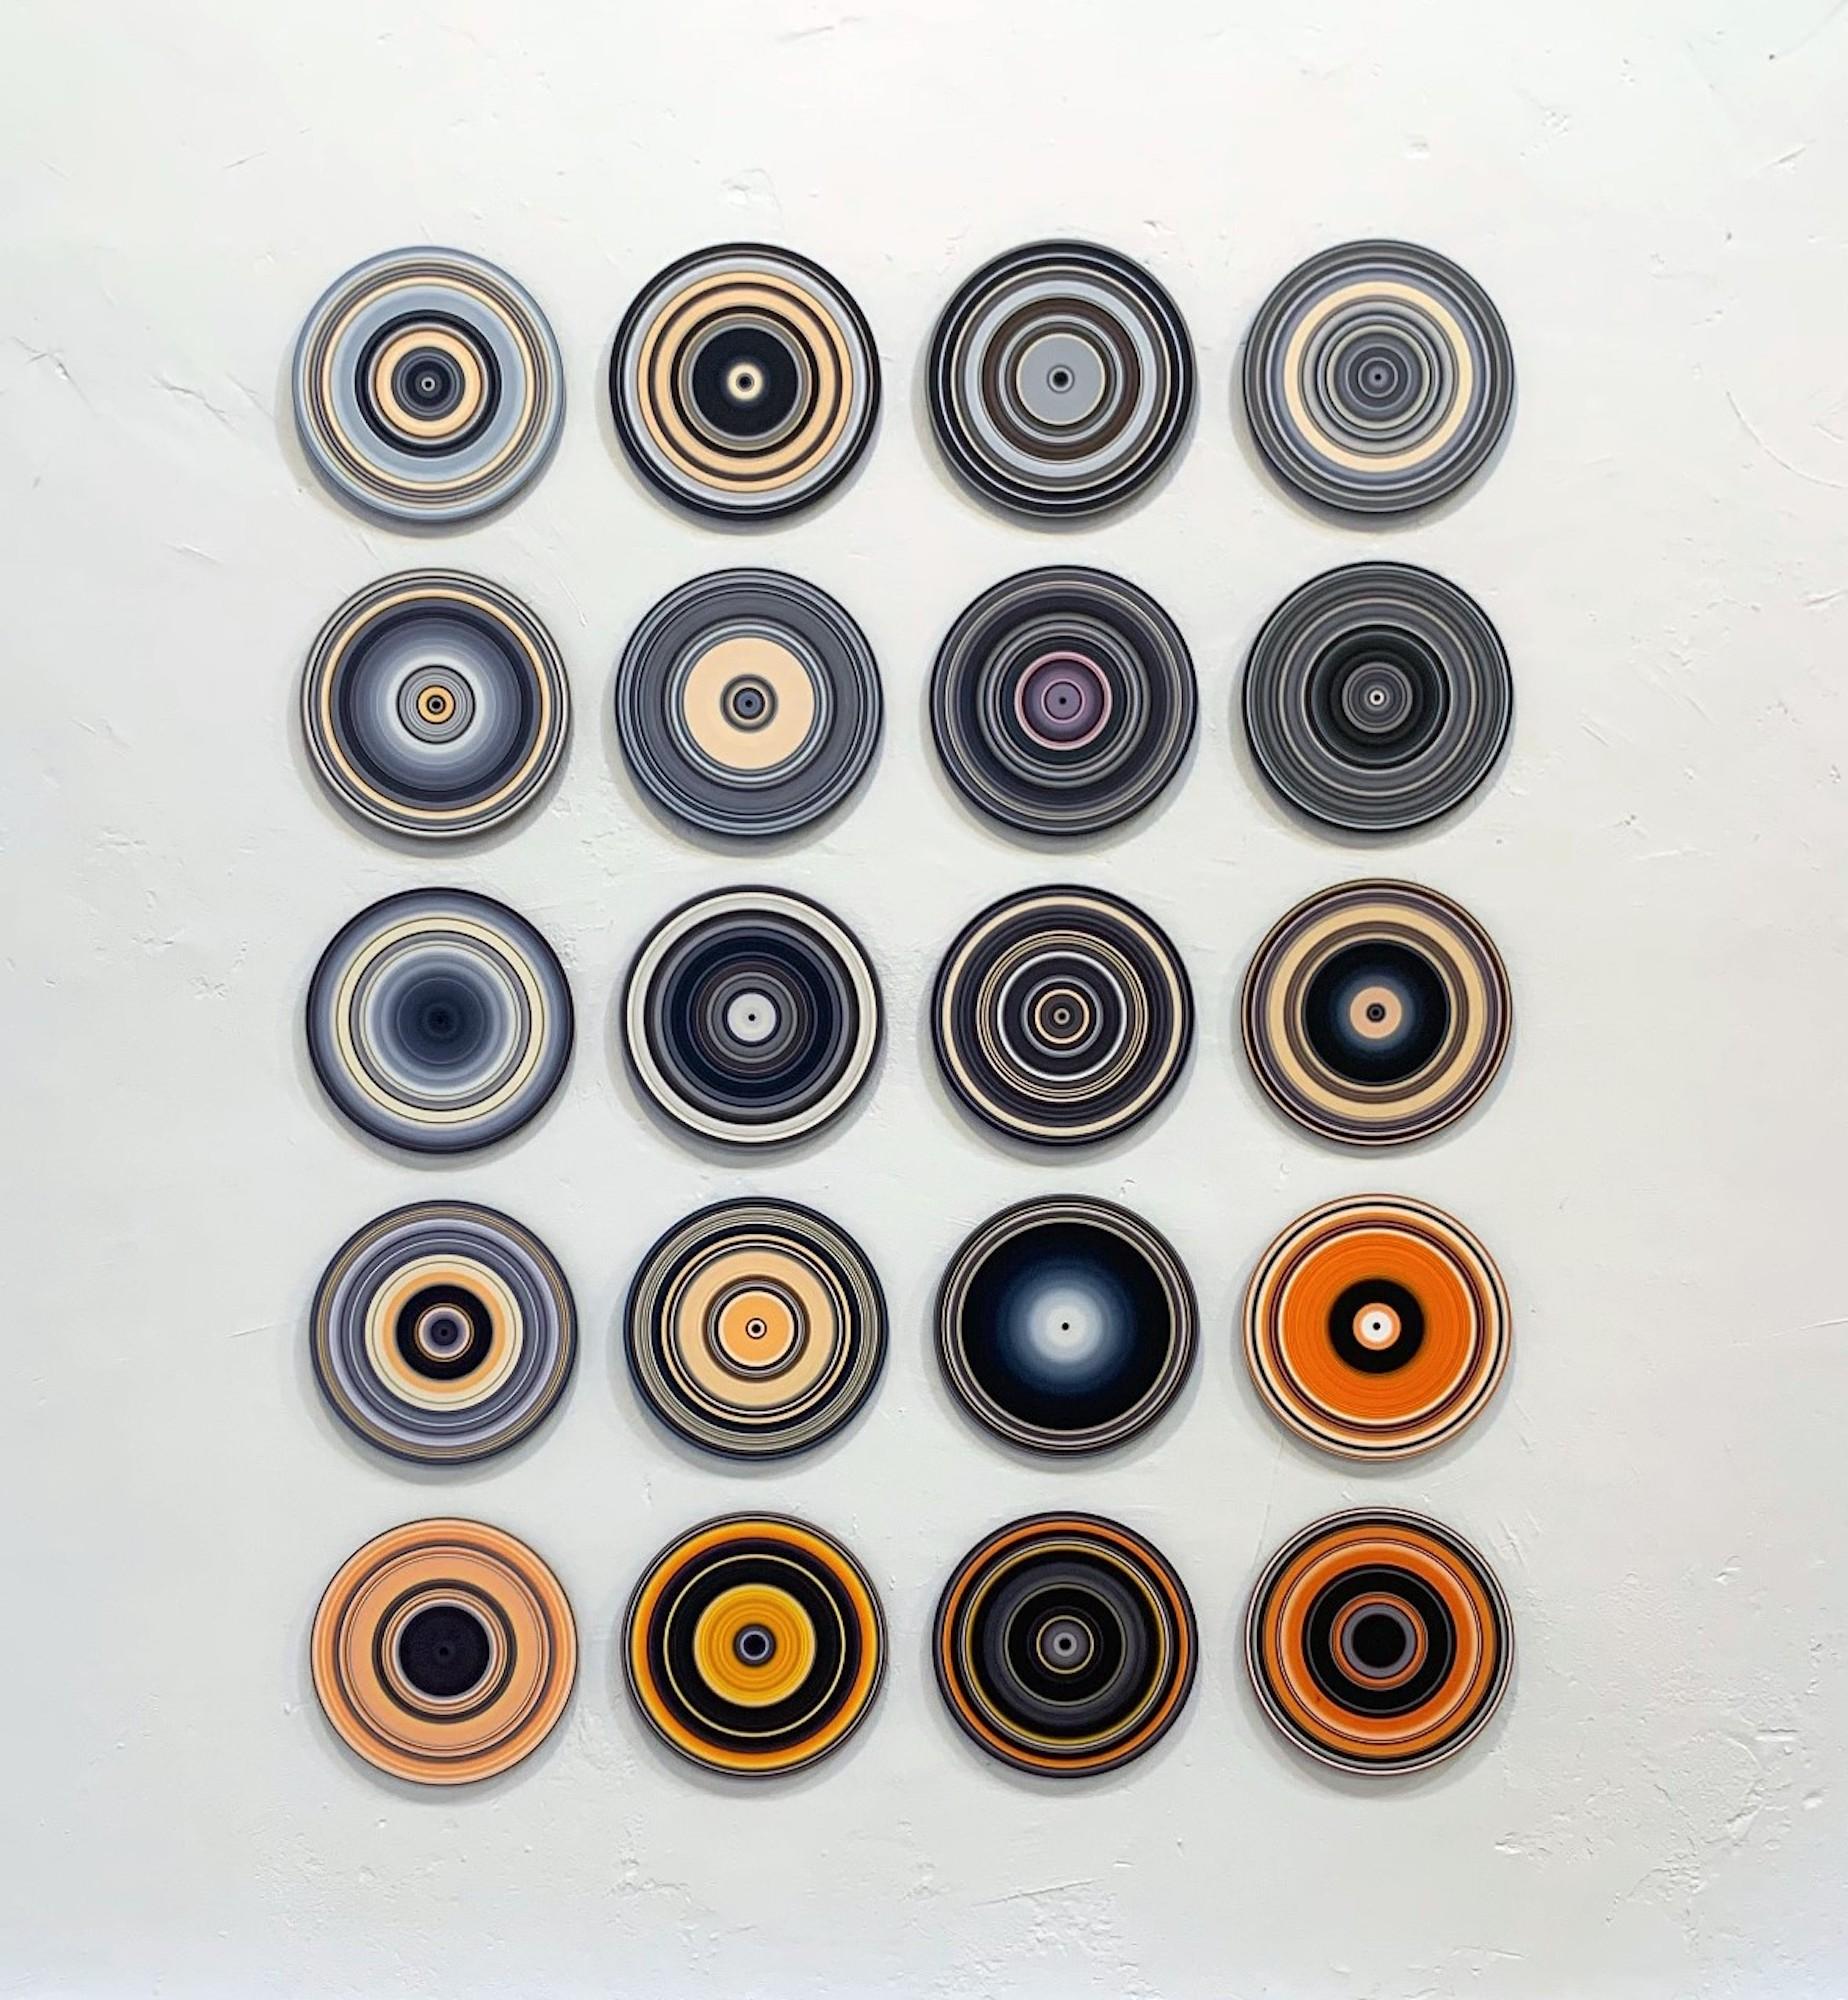 SOUND AND VISION - BlackWhiteOrange (Volume II) ist eine einzigartige Öl-auf-Vinyl-Installation der deutschen zeitgenössischen Künstlerin Doris Marten mit den Maßen 170 × 135 cm (66,9 × 53,1 in). Jedes Stück hat einen Durchmesser von 30 cm (11,8